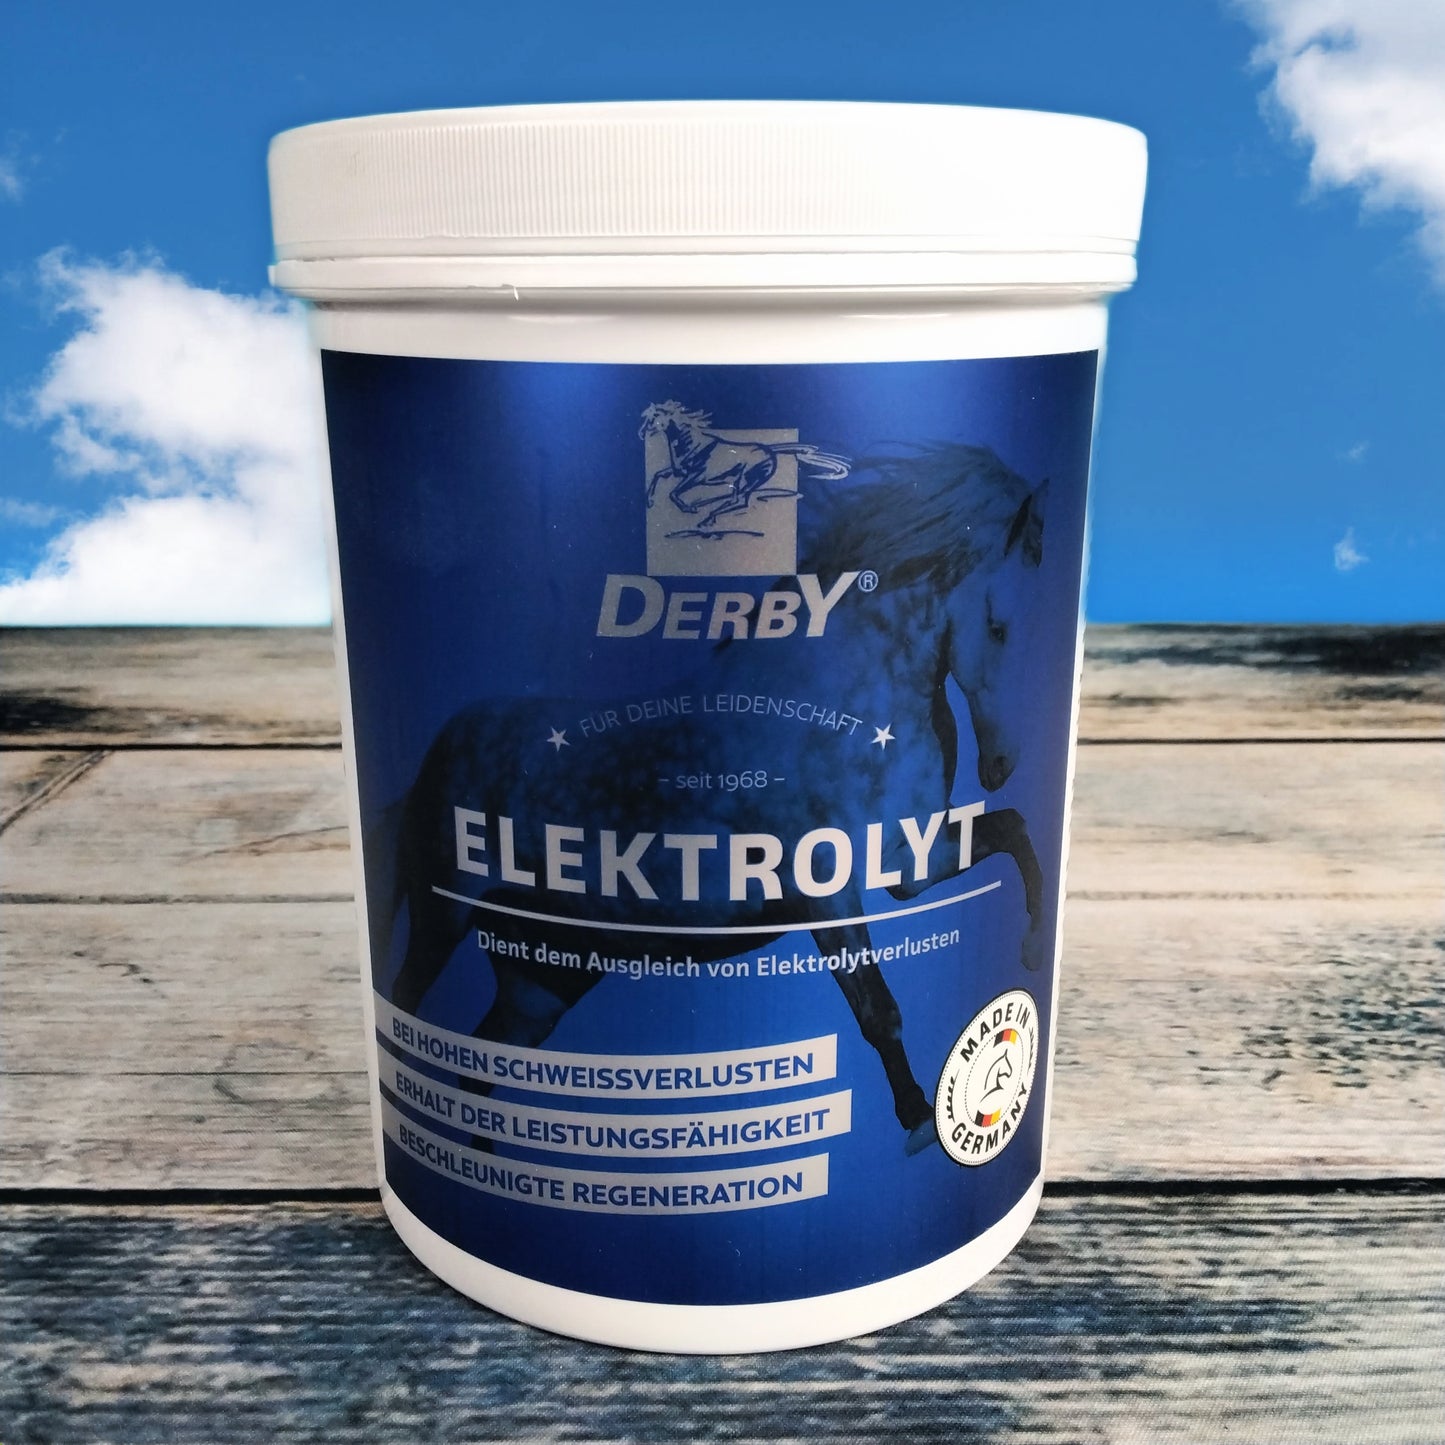 DERBY ELEKTROLYT - Dient dem Ausgleich von Elektrolytverlusten